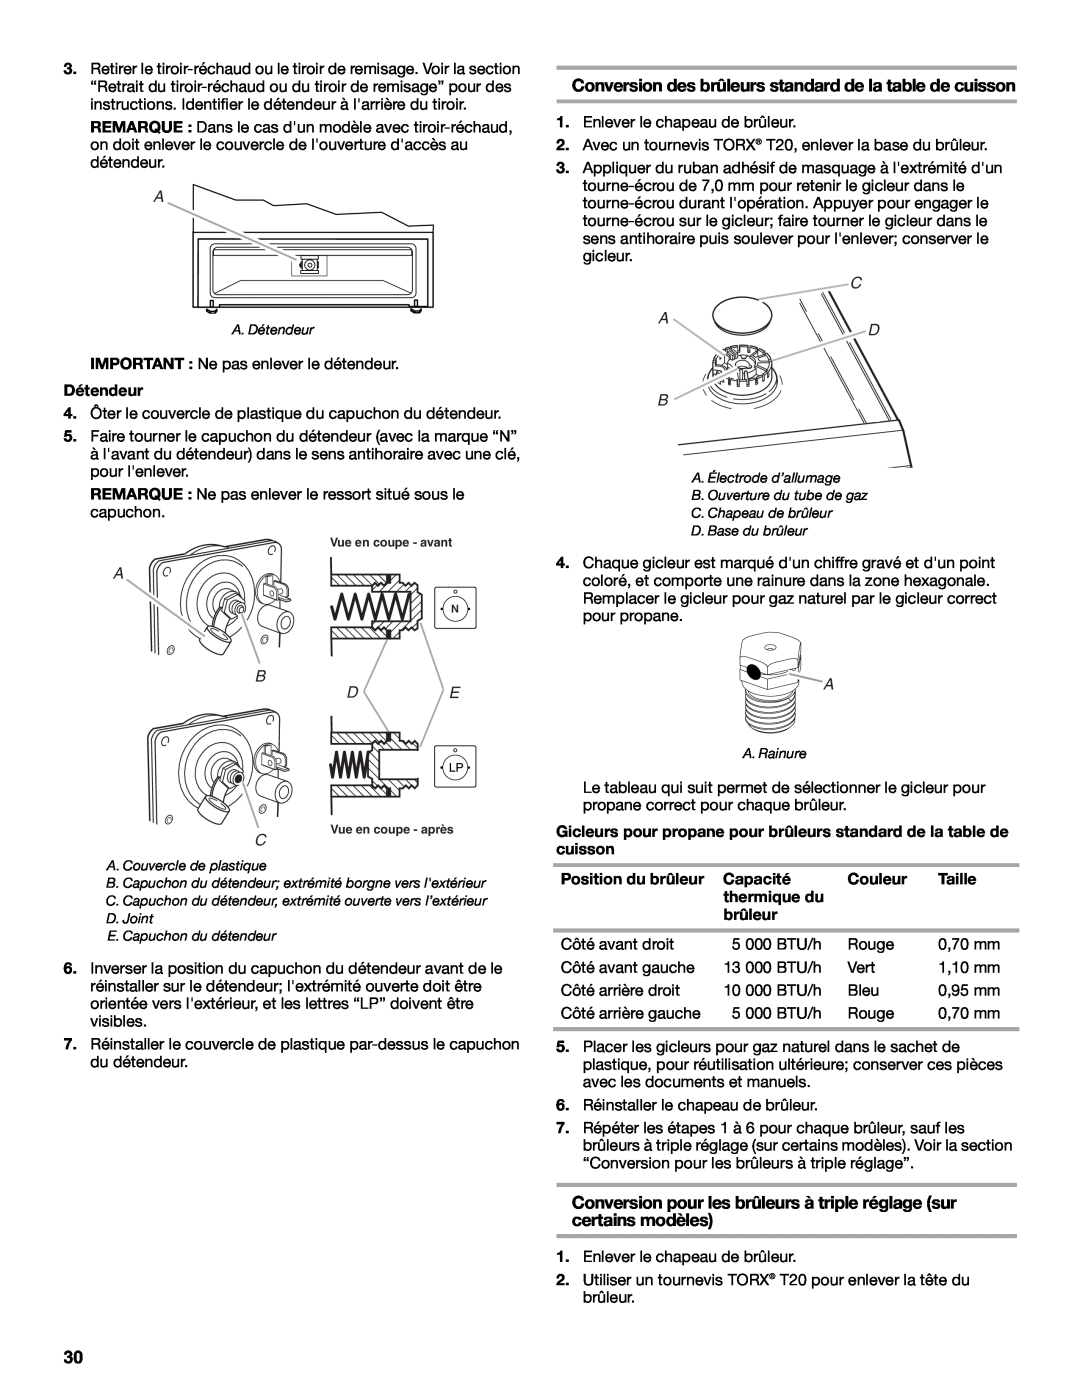 Whirlpool Slide-In Electric Ranges Conversion des brûleurs standard de la table de cuisson, Détendeur, B De, C A D B 